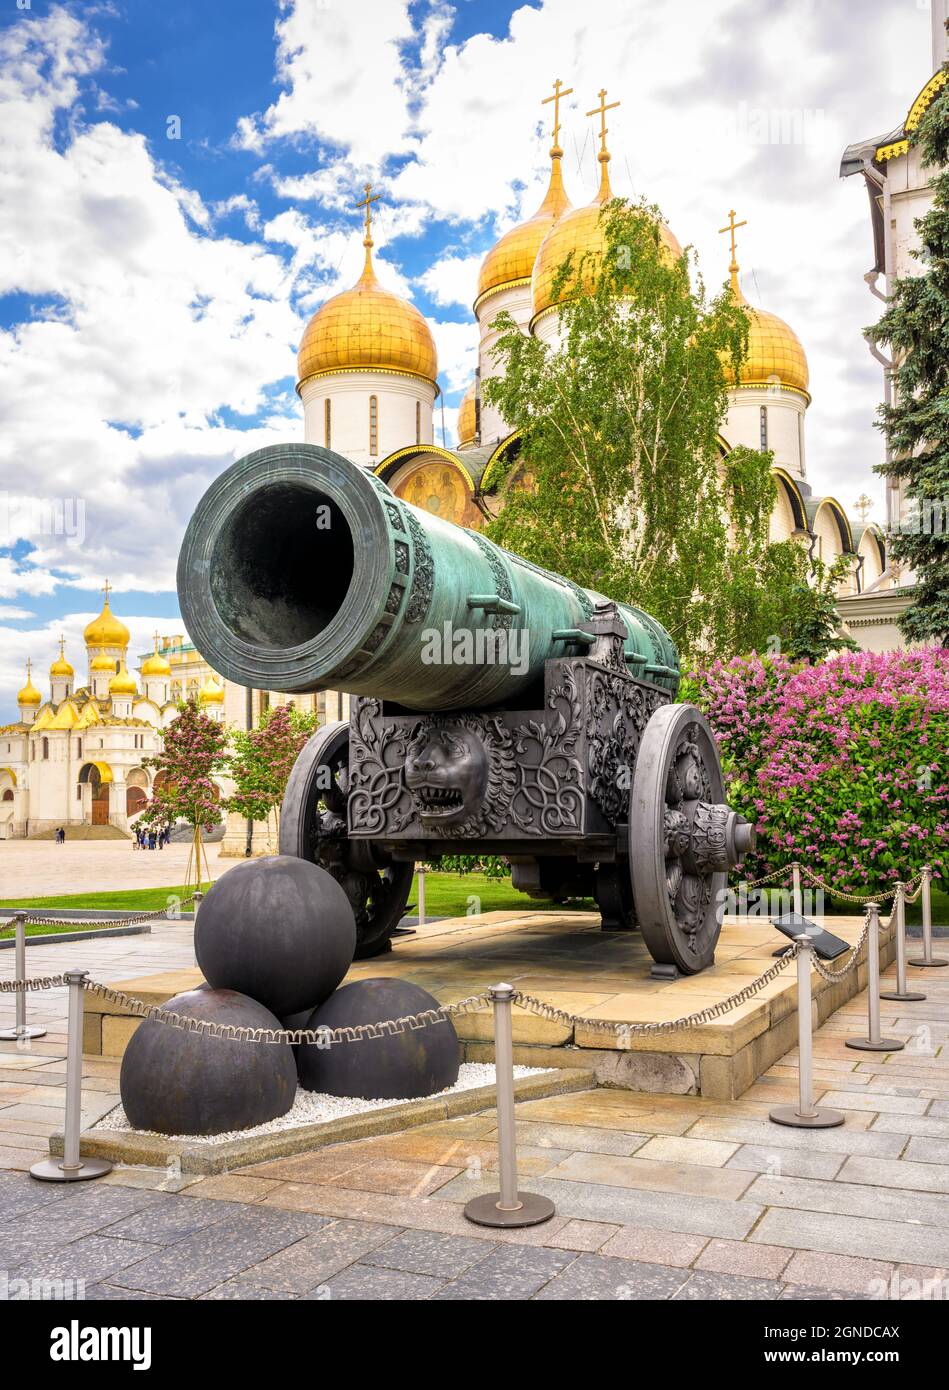 Tsar Cannon (re dei cannoni) nel Cremlino di Mosca, Russia. Grande monumento storico che si affaccia sulle antiche cattedrali nel centro di Mosca in estate. Questo pl Foto Stock